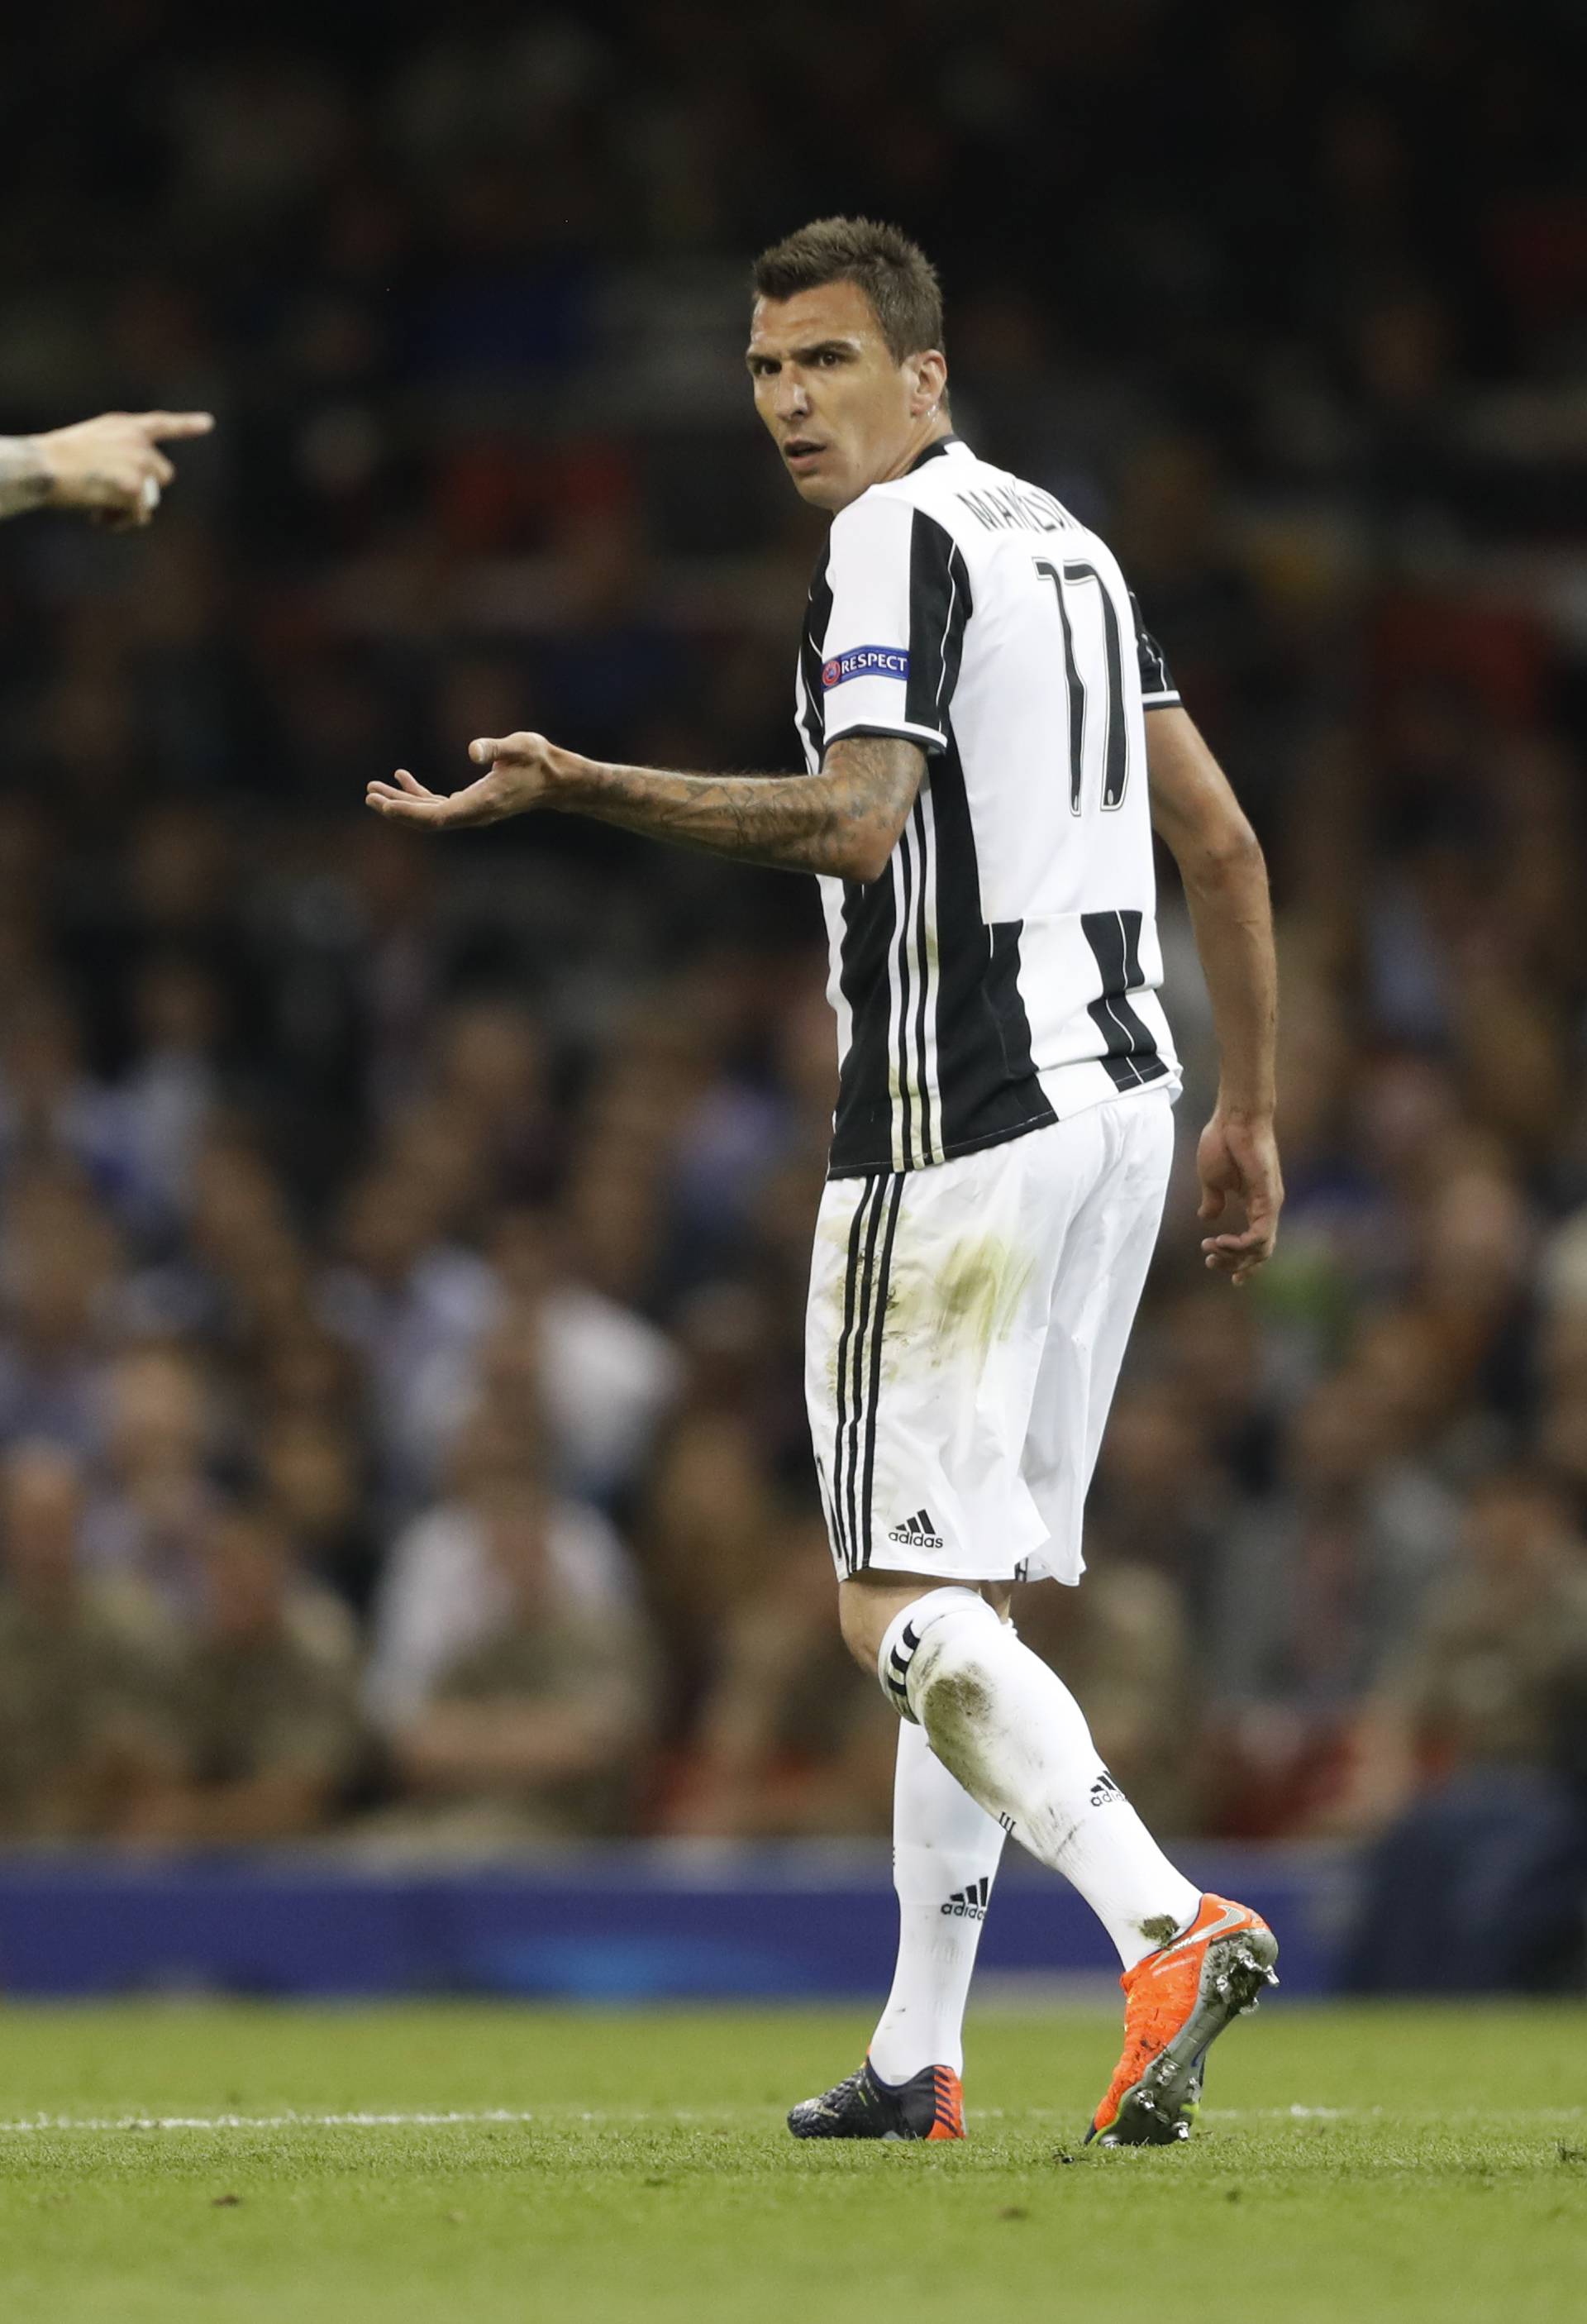 Real Madrid's Sergio Ramos clashes with Juventus' Mario Mandzukic